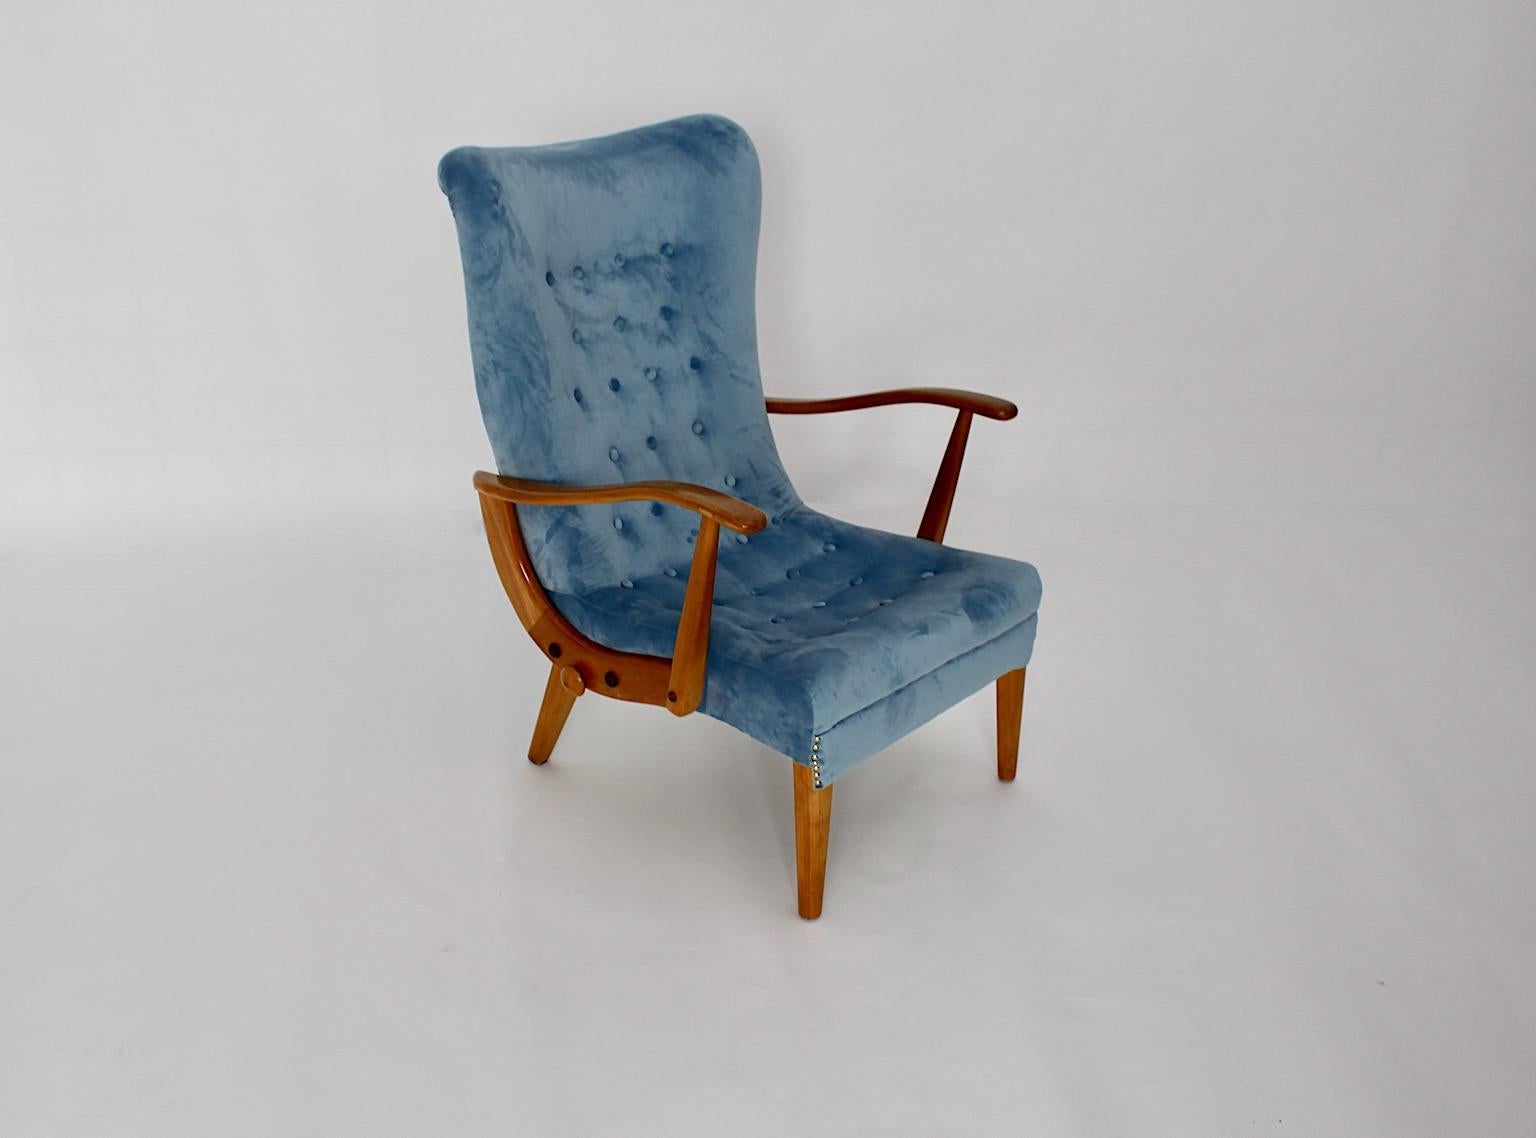 Mid-Century Modern Vintage blauer Sessel Lounge Chairs aus Buche entworfen und hergestellt Österreich 1950er Jahren.
Während die Sitzschale neu mit himmelblauem Samtstoff bezogen ist, weist das Buchenholzgestell einen schönen honigbraunen Ton